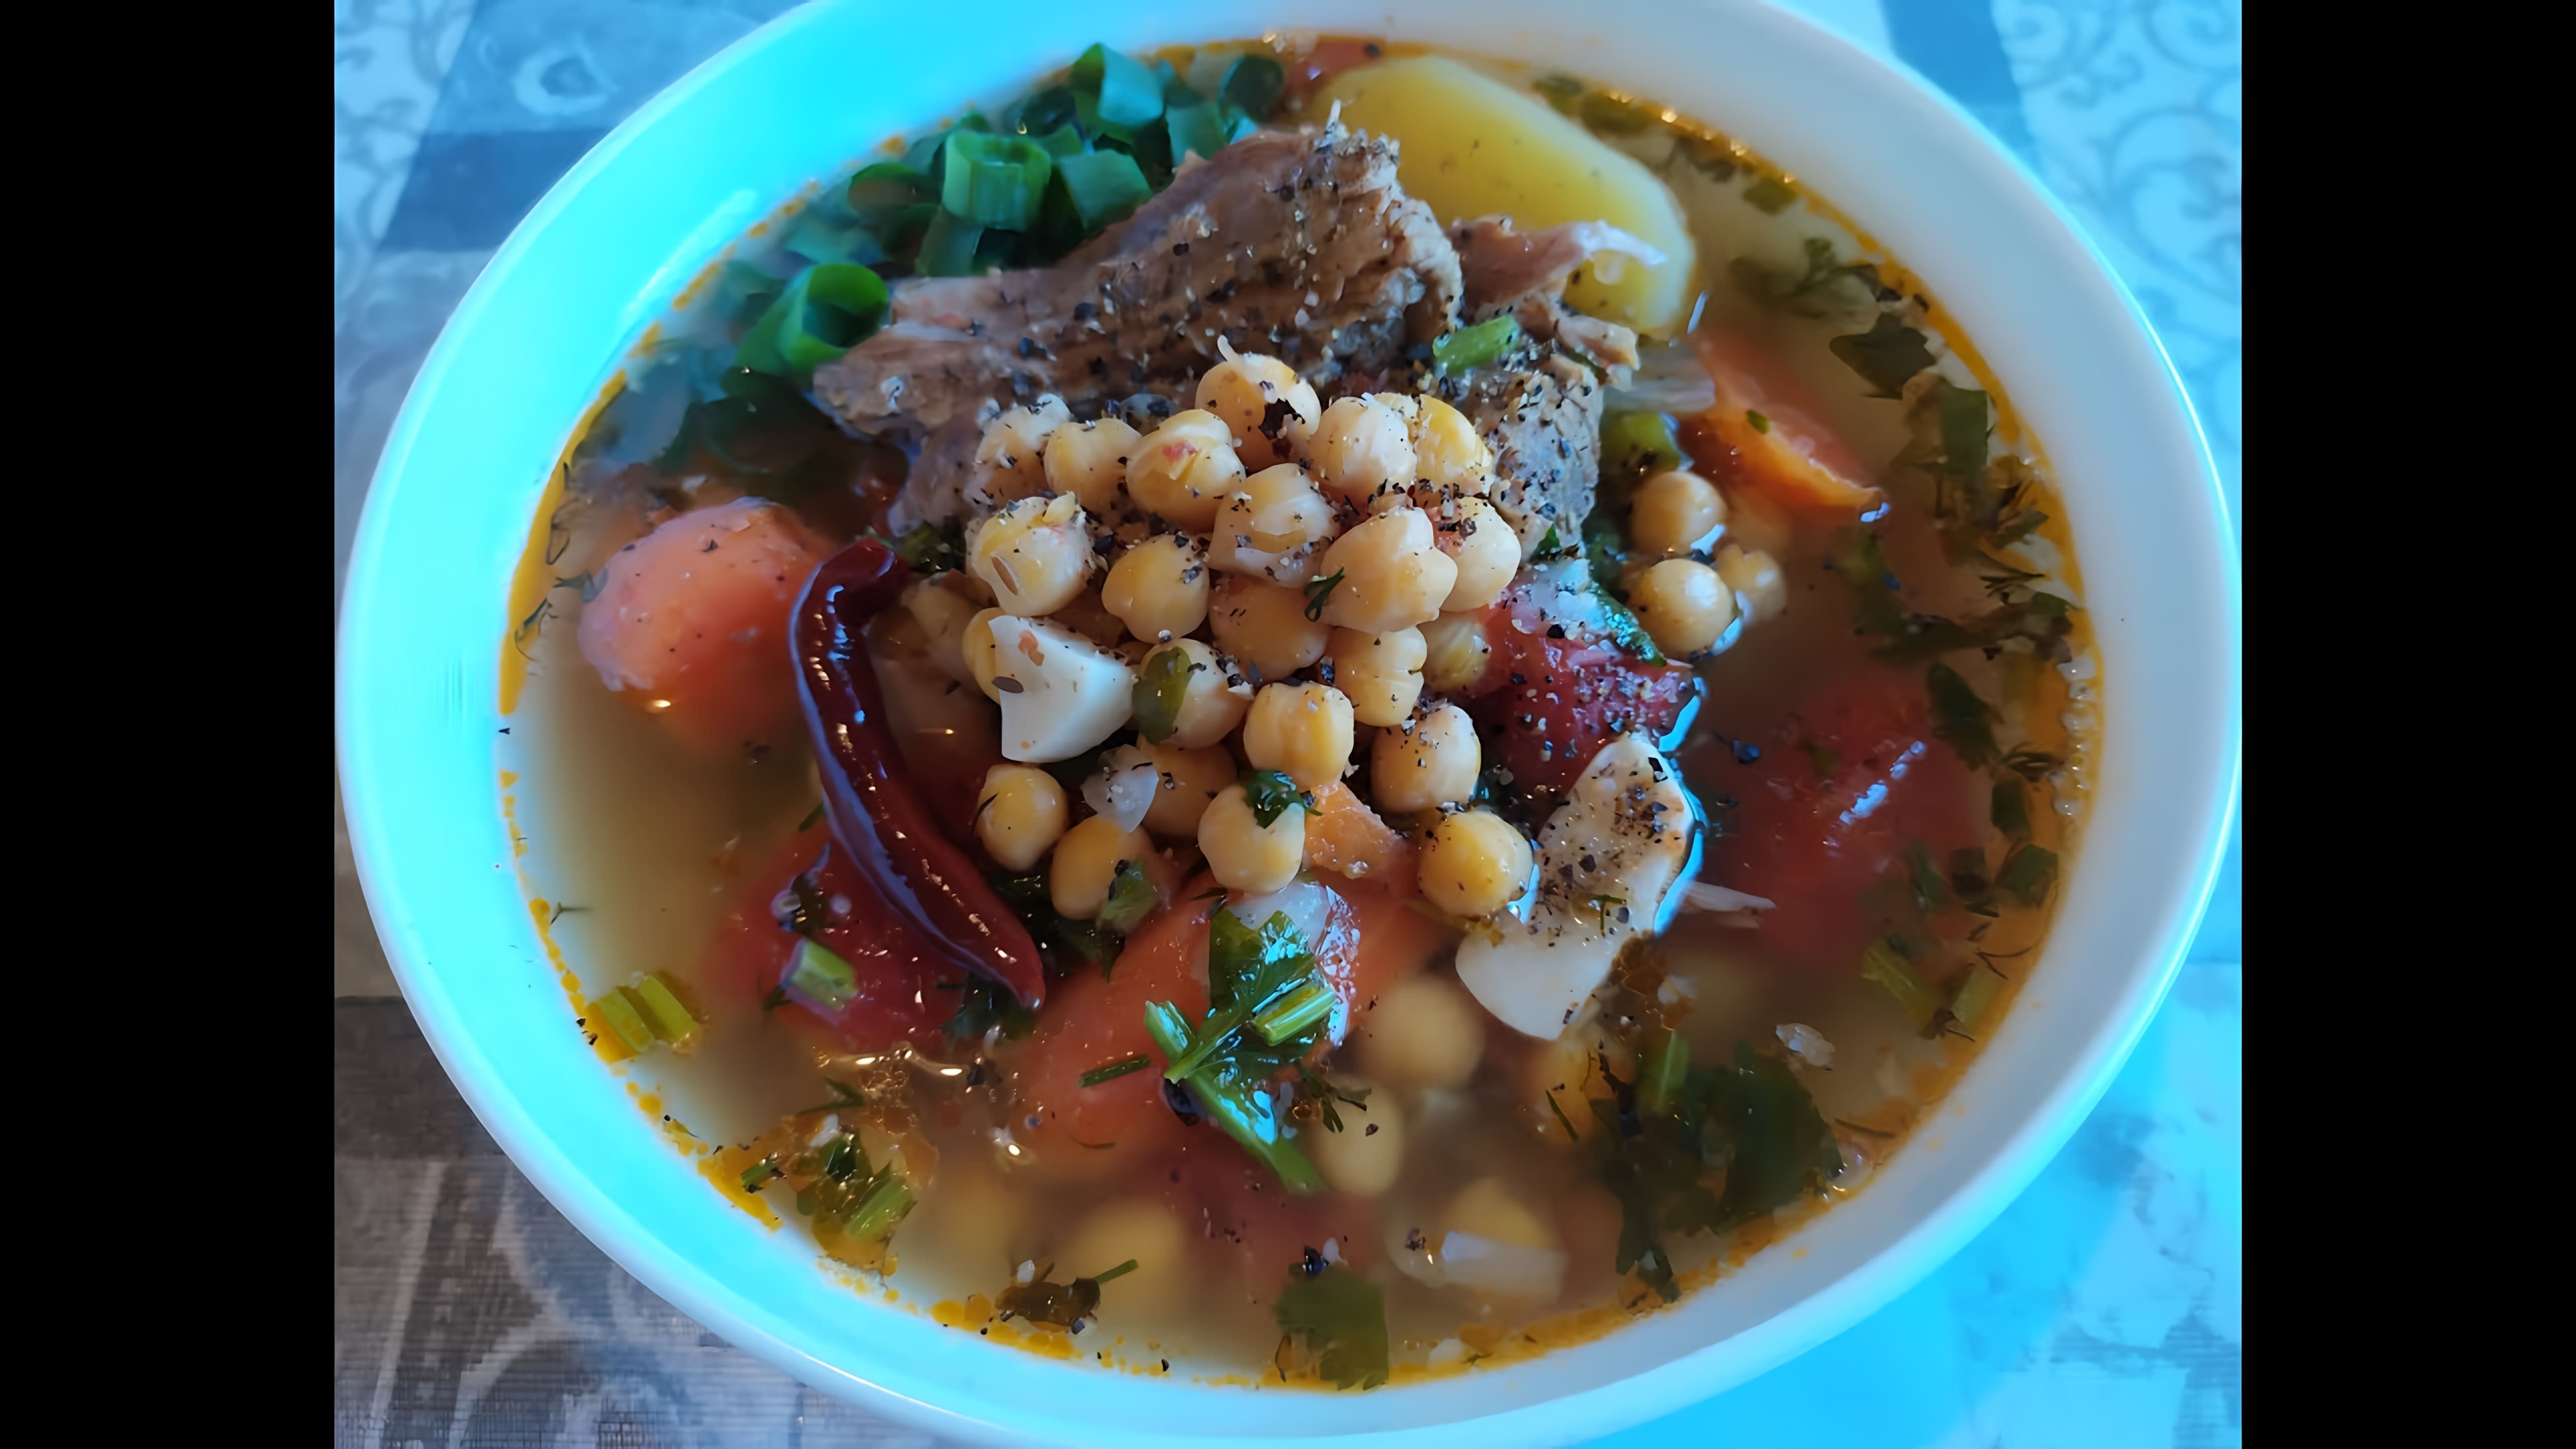 В данном видео демонстрируется процесс приготовления узбекского супа "Шурпа" с бараниной и нутом